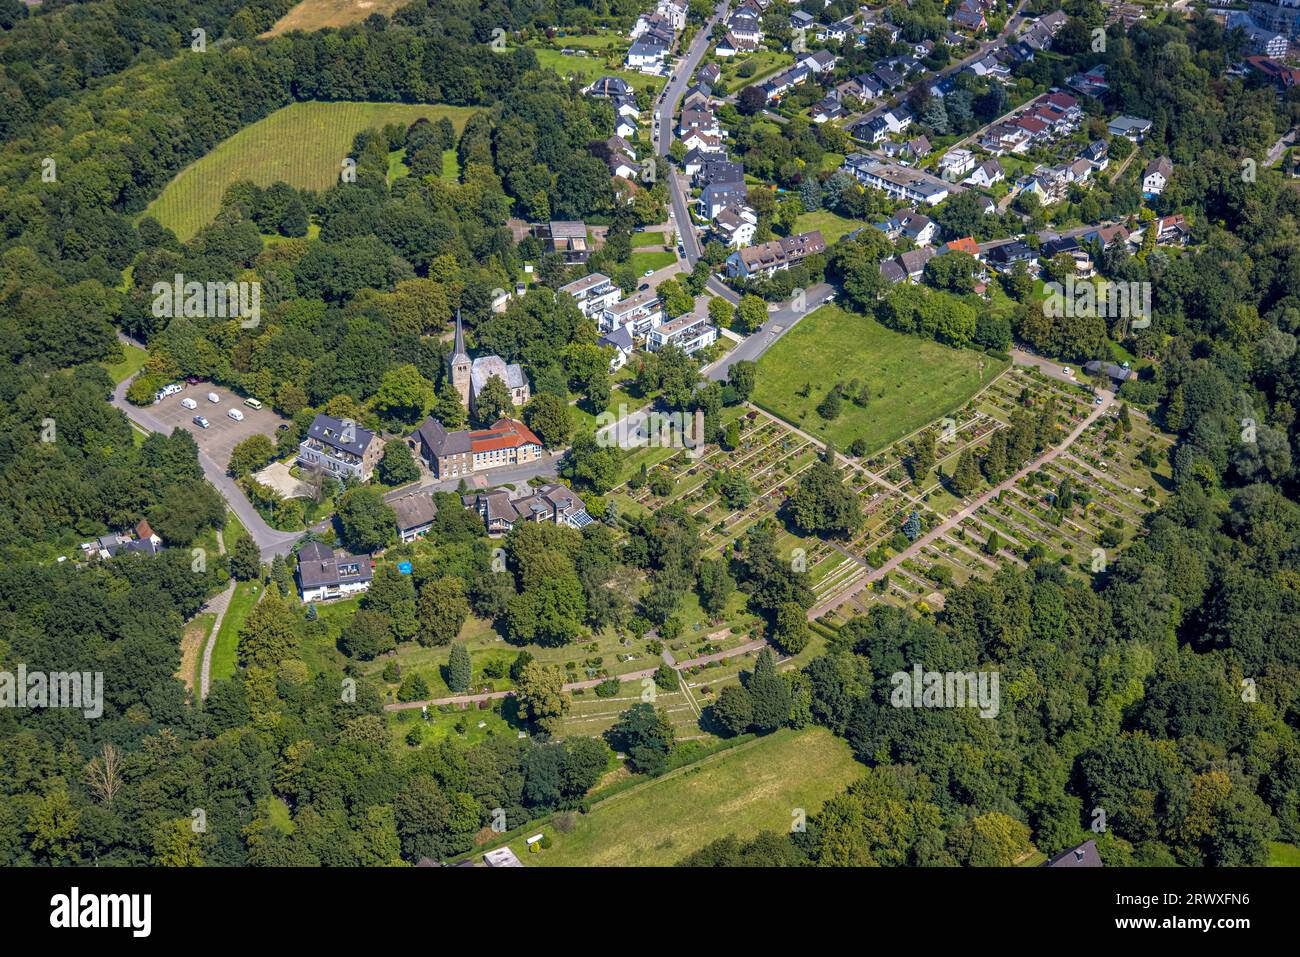 Vue aérienne, vue du village Stiepel avec église du village et cimetière, Stiepel, Bochum, région de la Ruhr, Rhénanie du Nord-Westphalie, Allemagne, site de culte, enterrement Banque D'Images